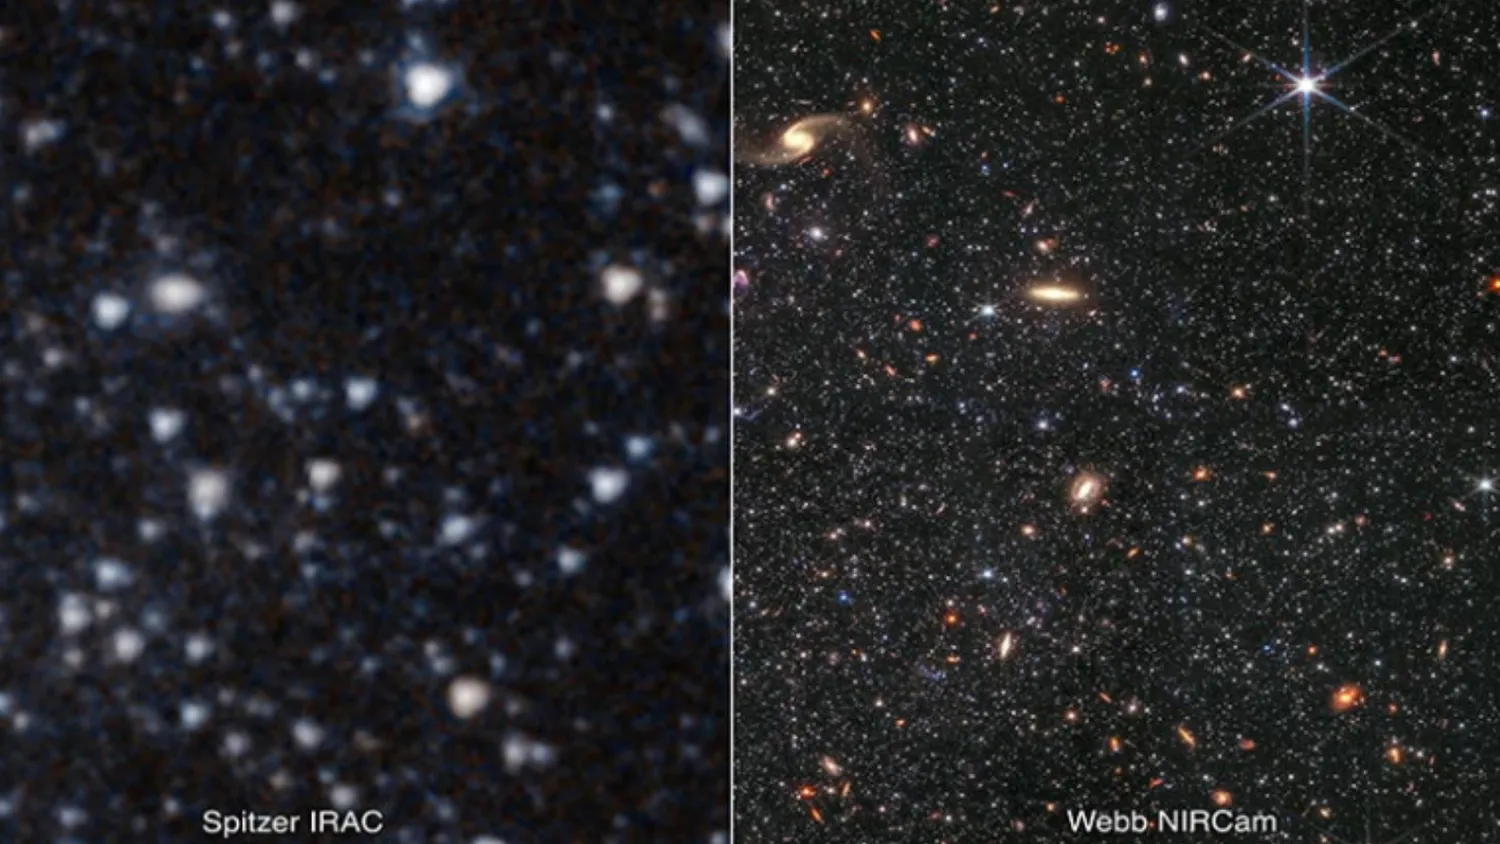 Mehr über den Artikel erfahren James Webb Space Telescope verfolgt die Geschichte einer Galaxie bis kurz nach dem Urknall zurück